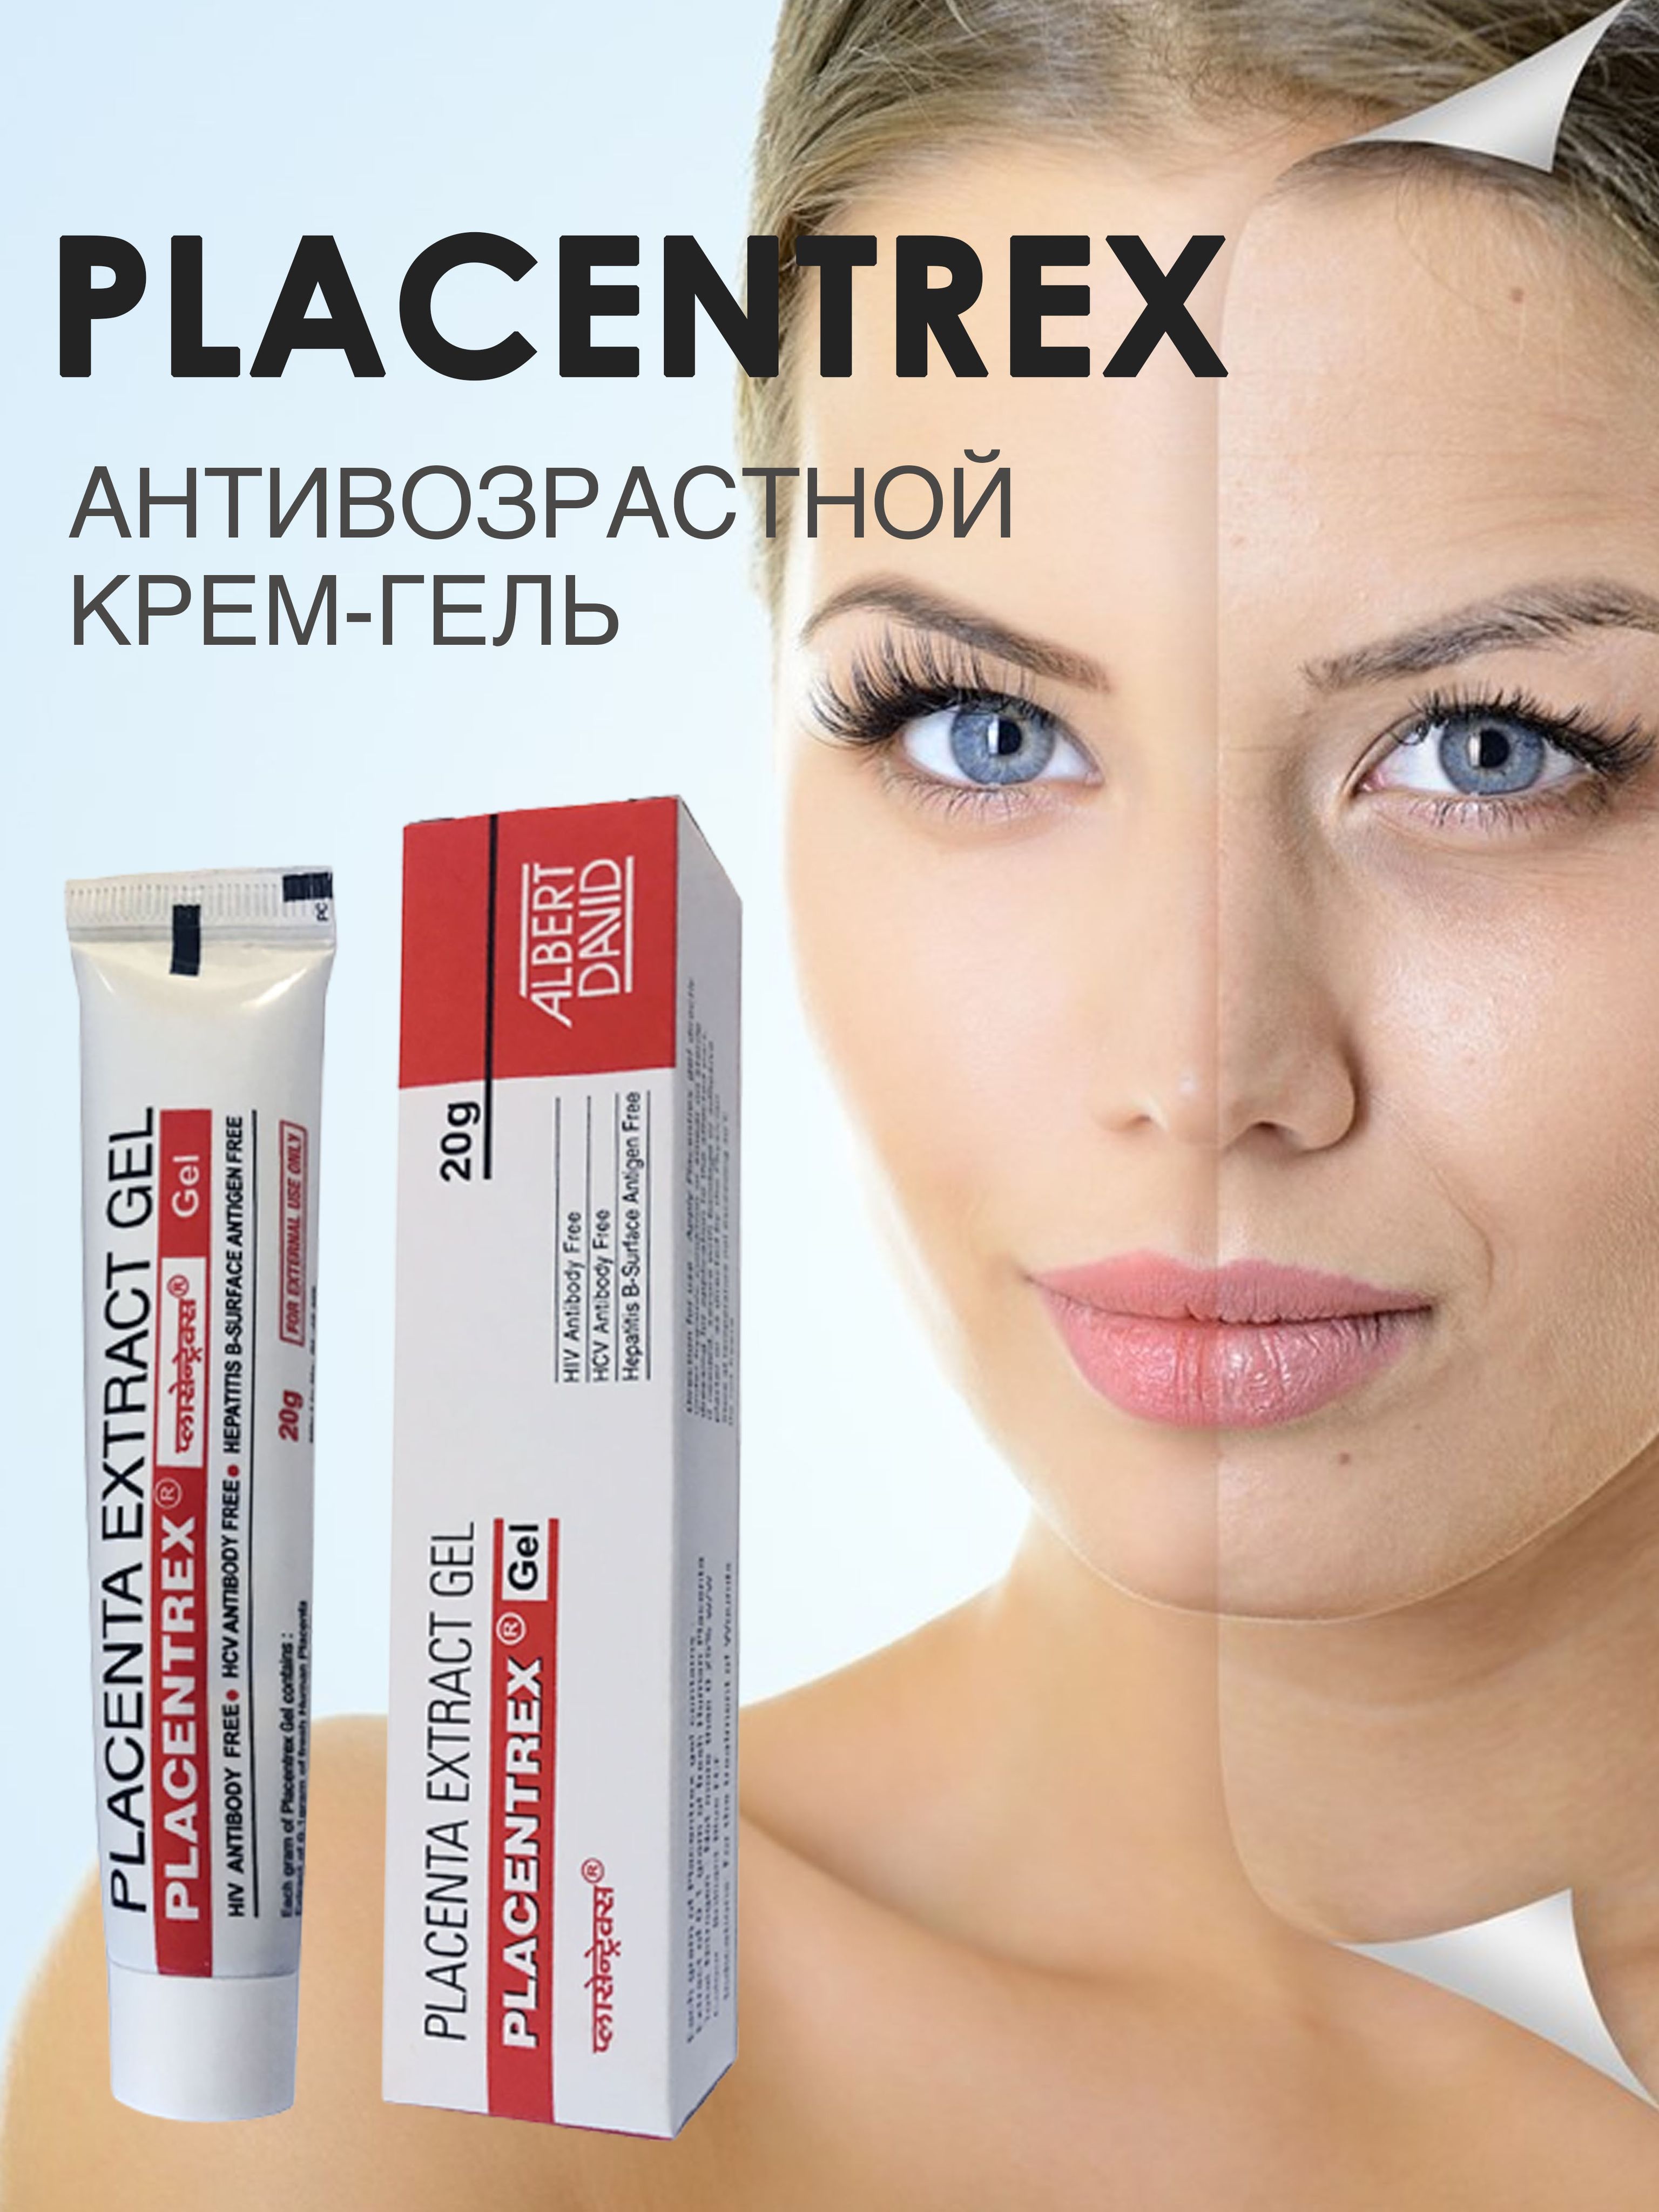 Placentrex gel. Placentrex гель. Placentrex Gel Индия. Placenta extract Gel. Гель "Плацентрекс" с экстрактом плаценты от морщин Placentrex placenta extract Gel.